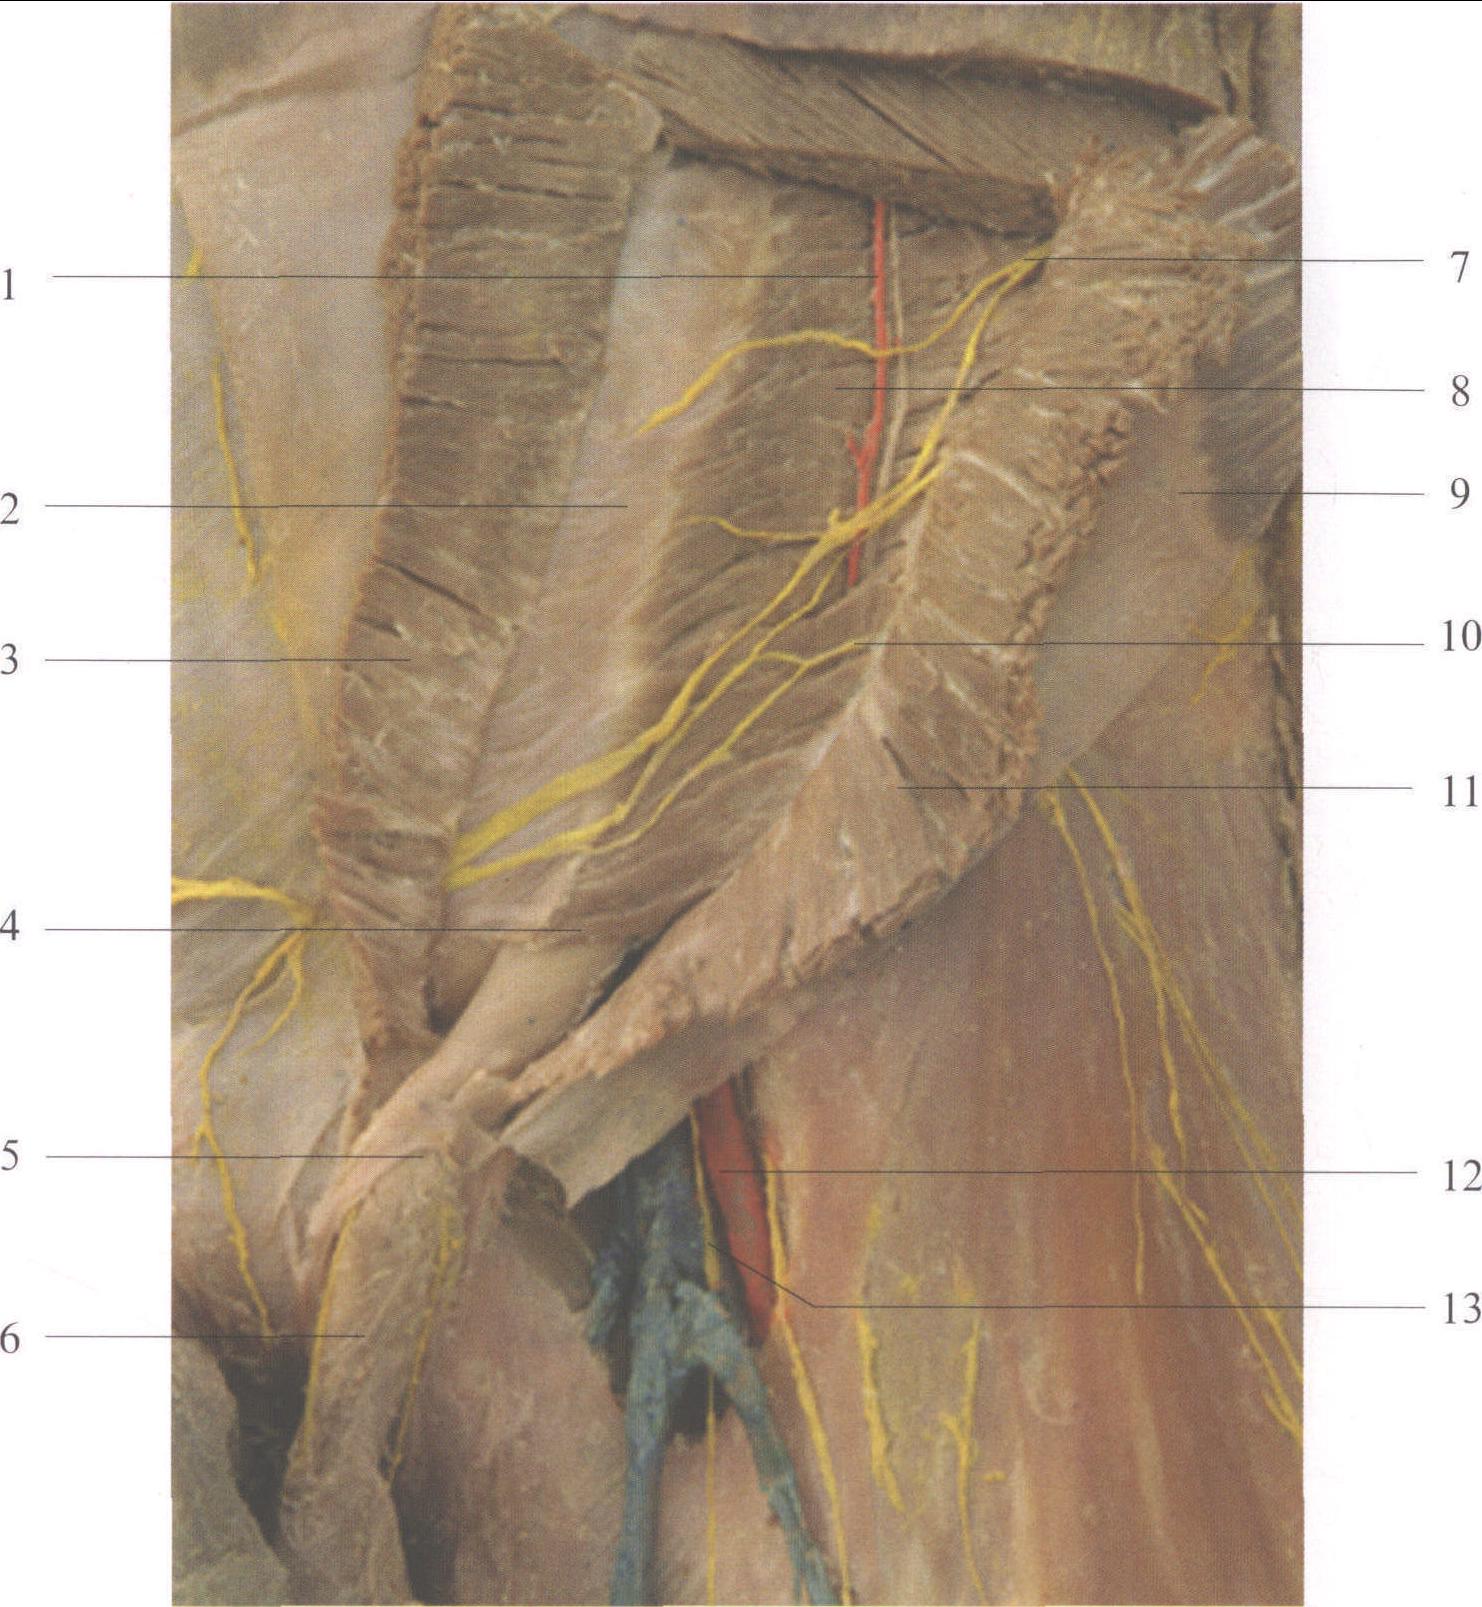 图3-3 腹前外侧壁 右前面观 显示腹横肌-基础医学-医学